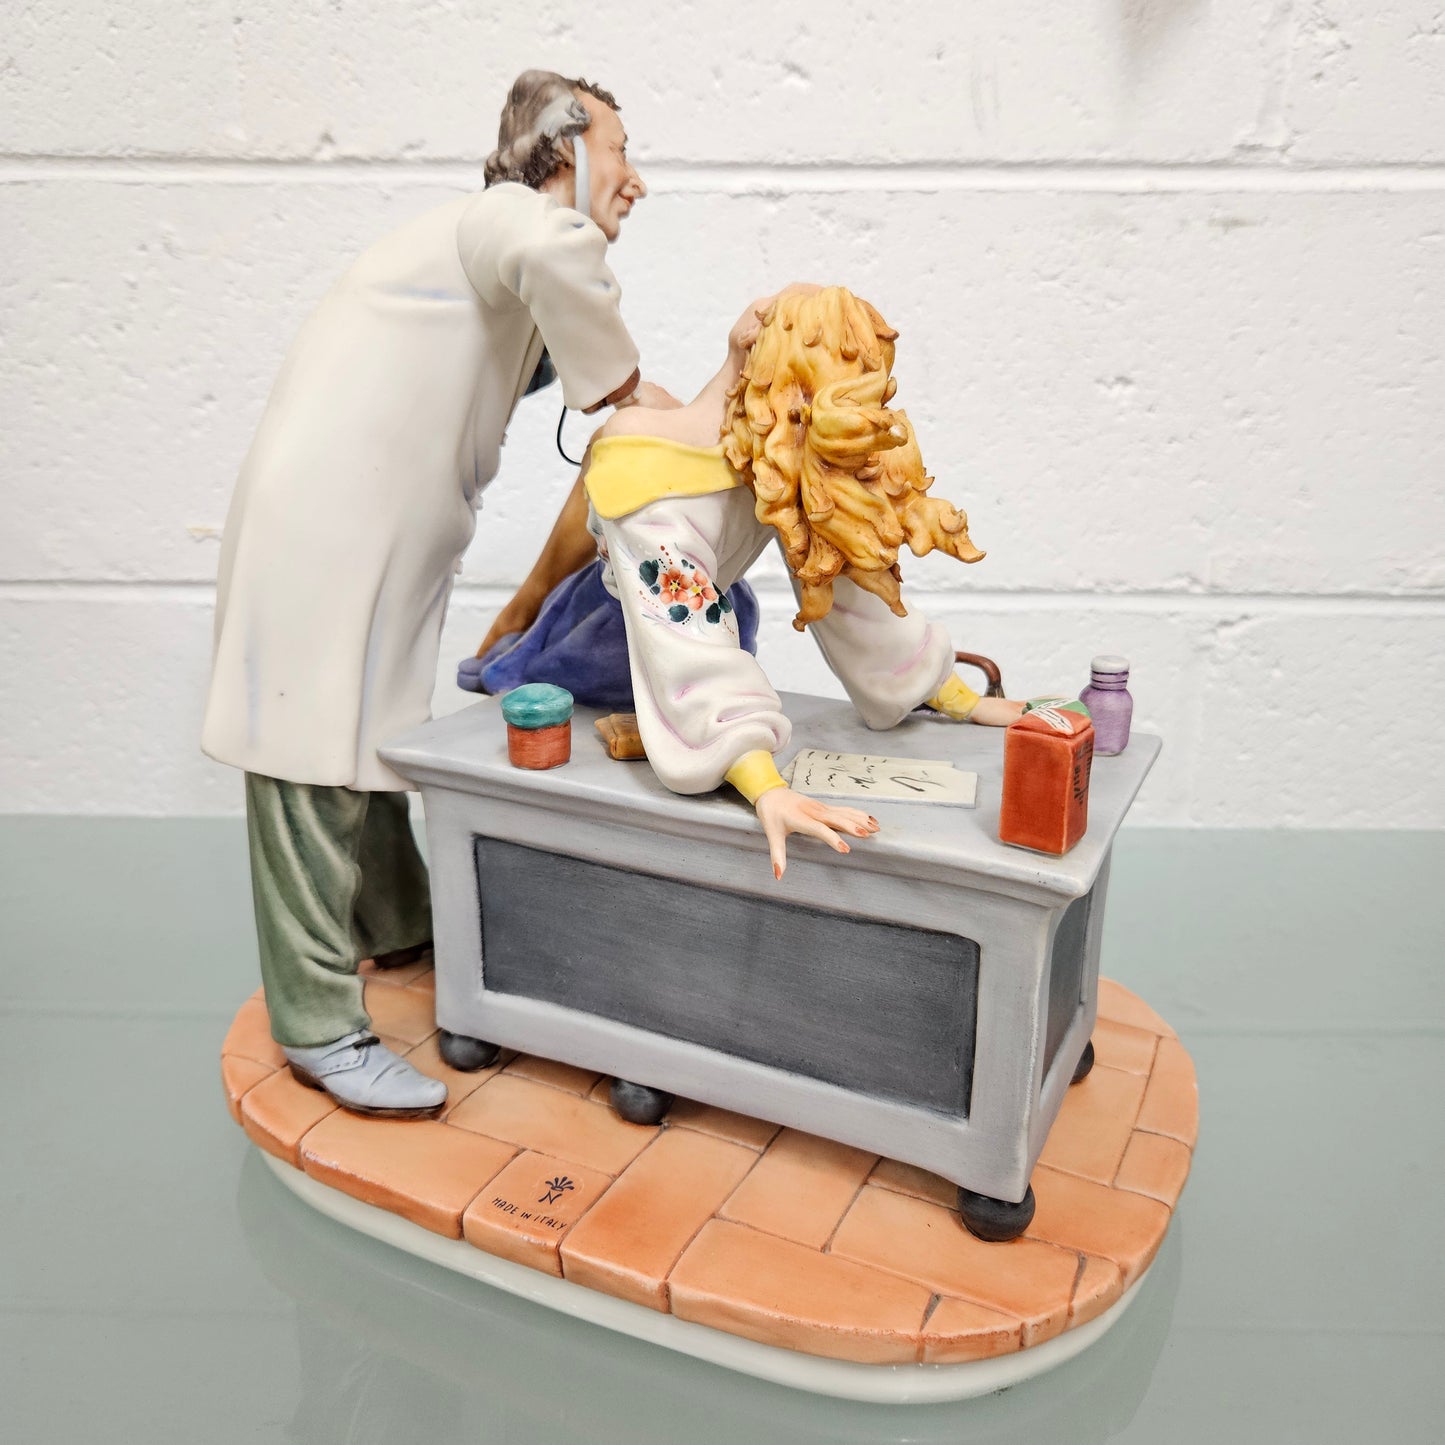 Risque Capodimonte Doctor & Patient Porcelain Statue